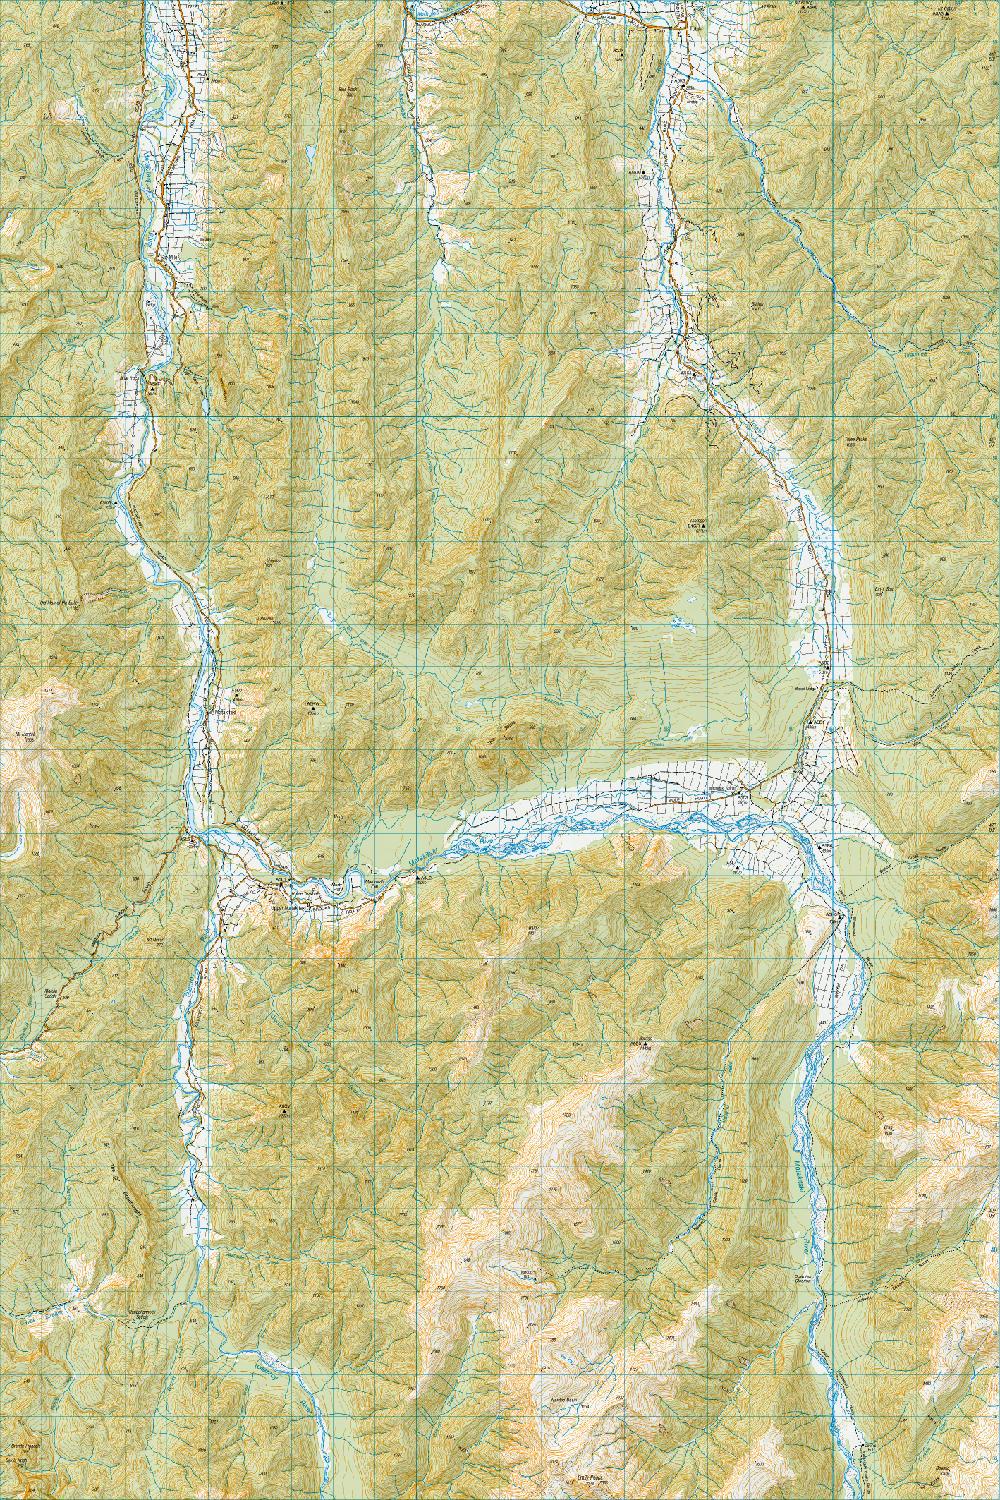 Topo map of Matakitaki